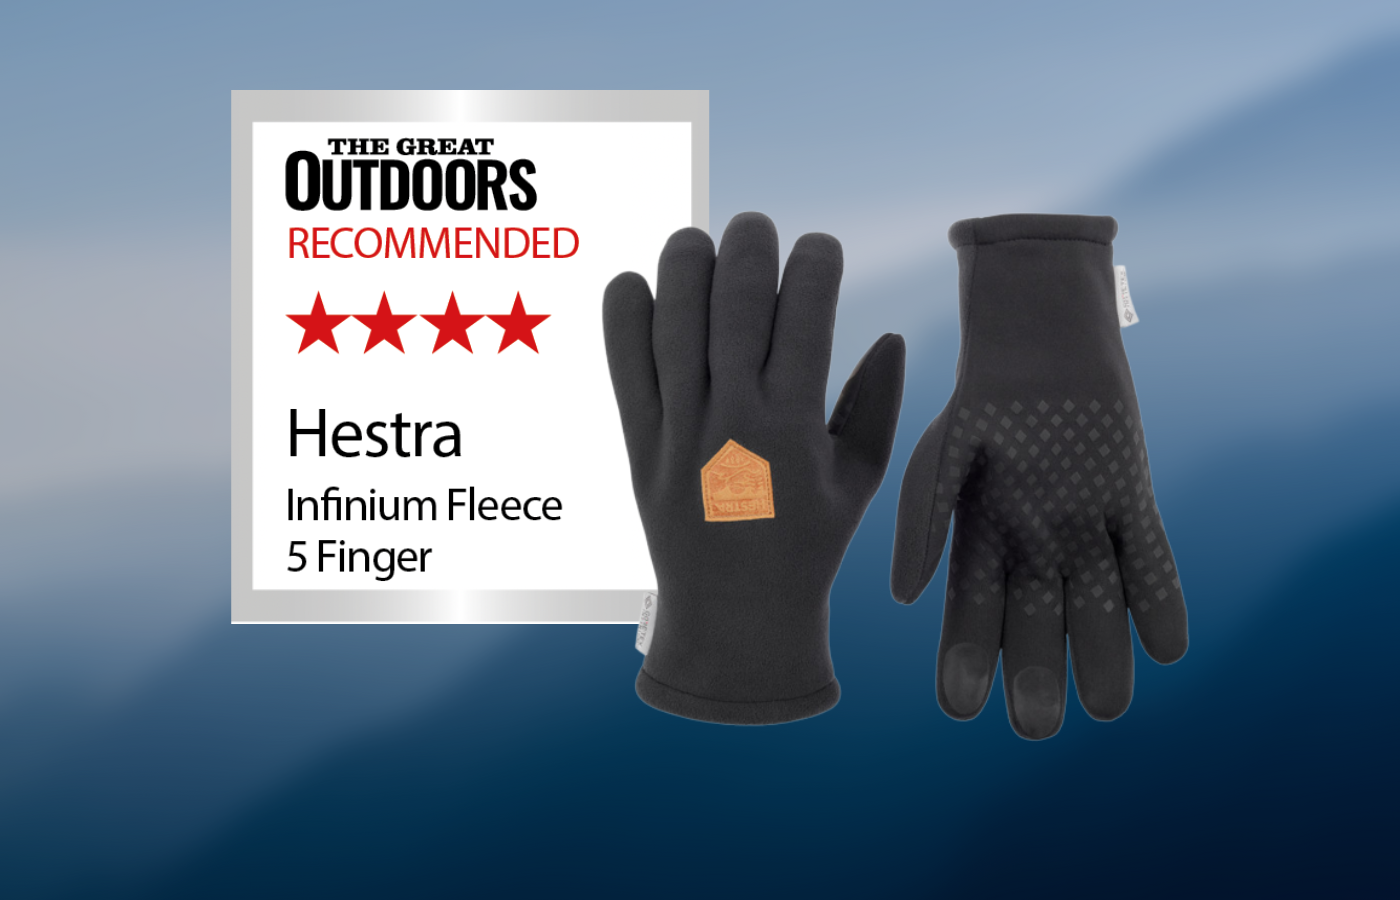 Hestra Infinium Fleece 5 Finger